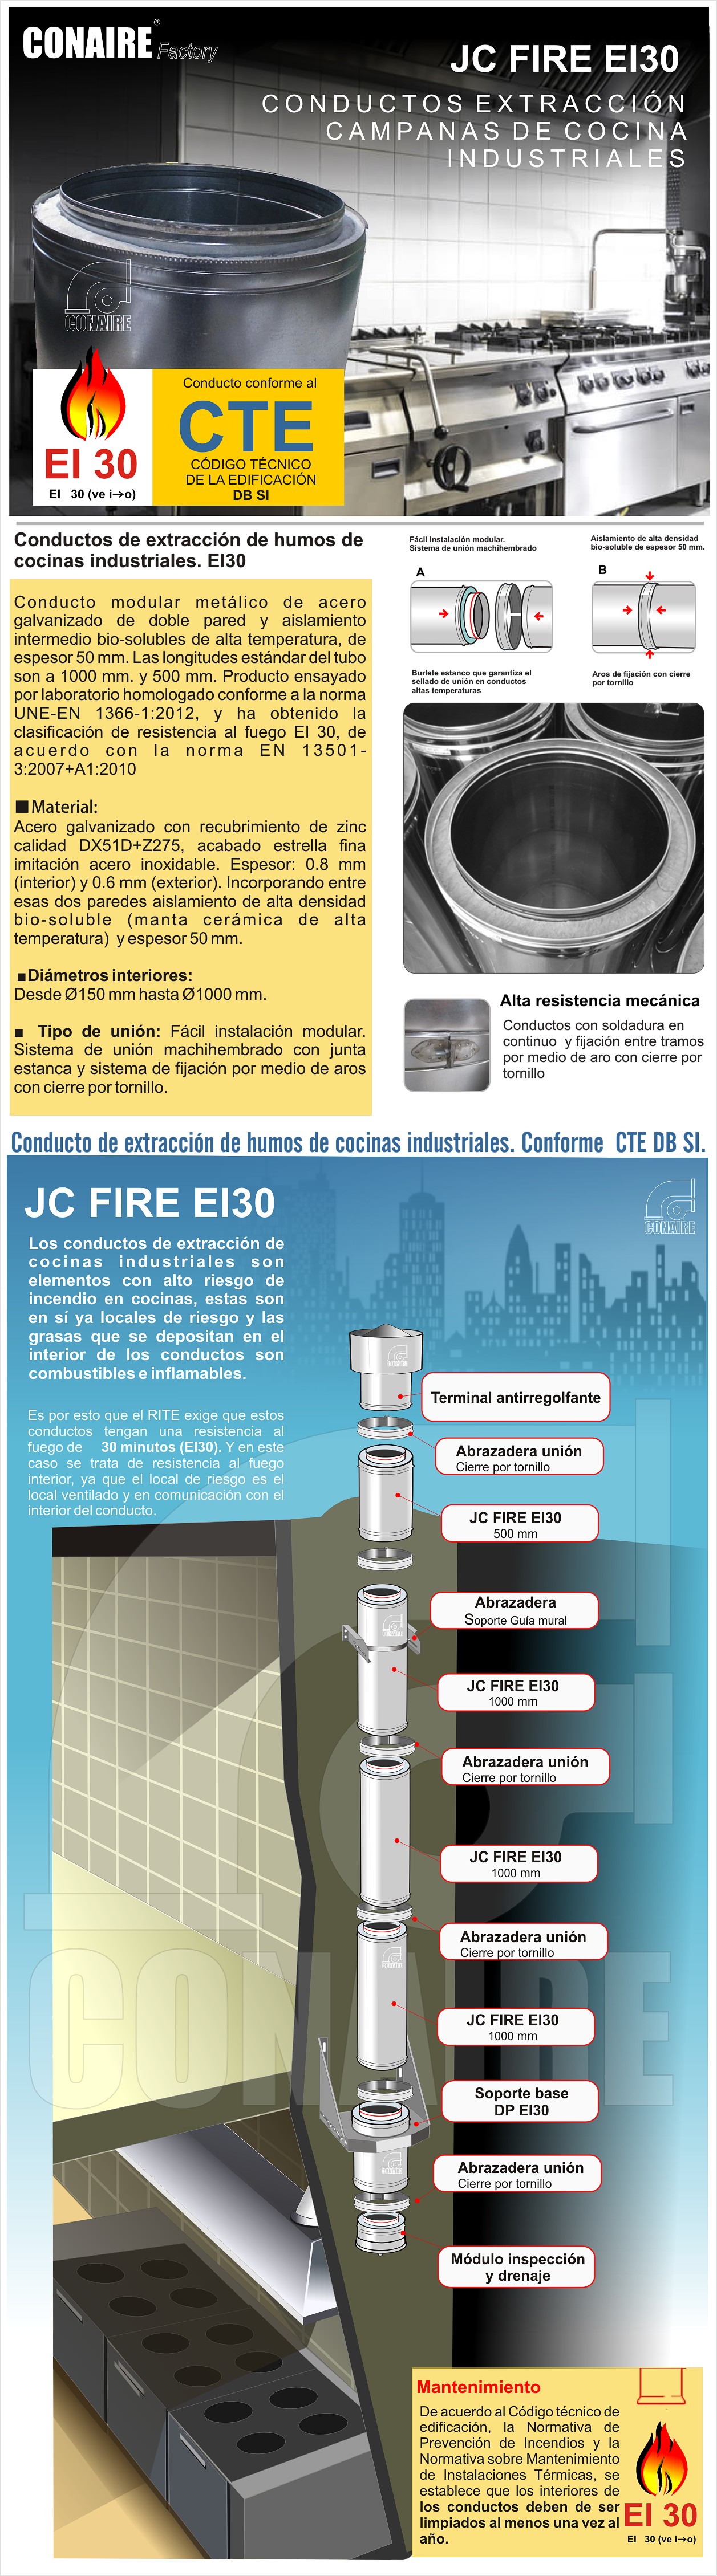 jc-fire-ei30